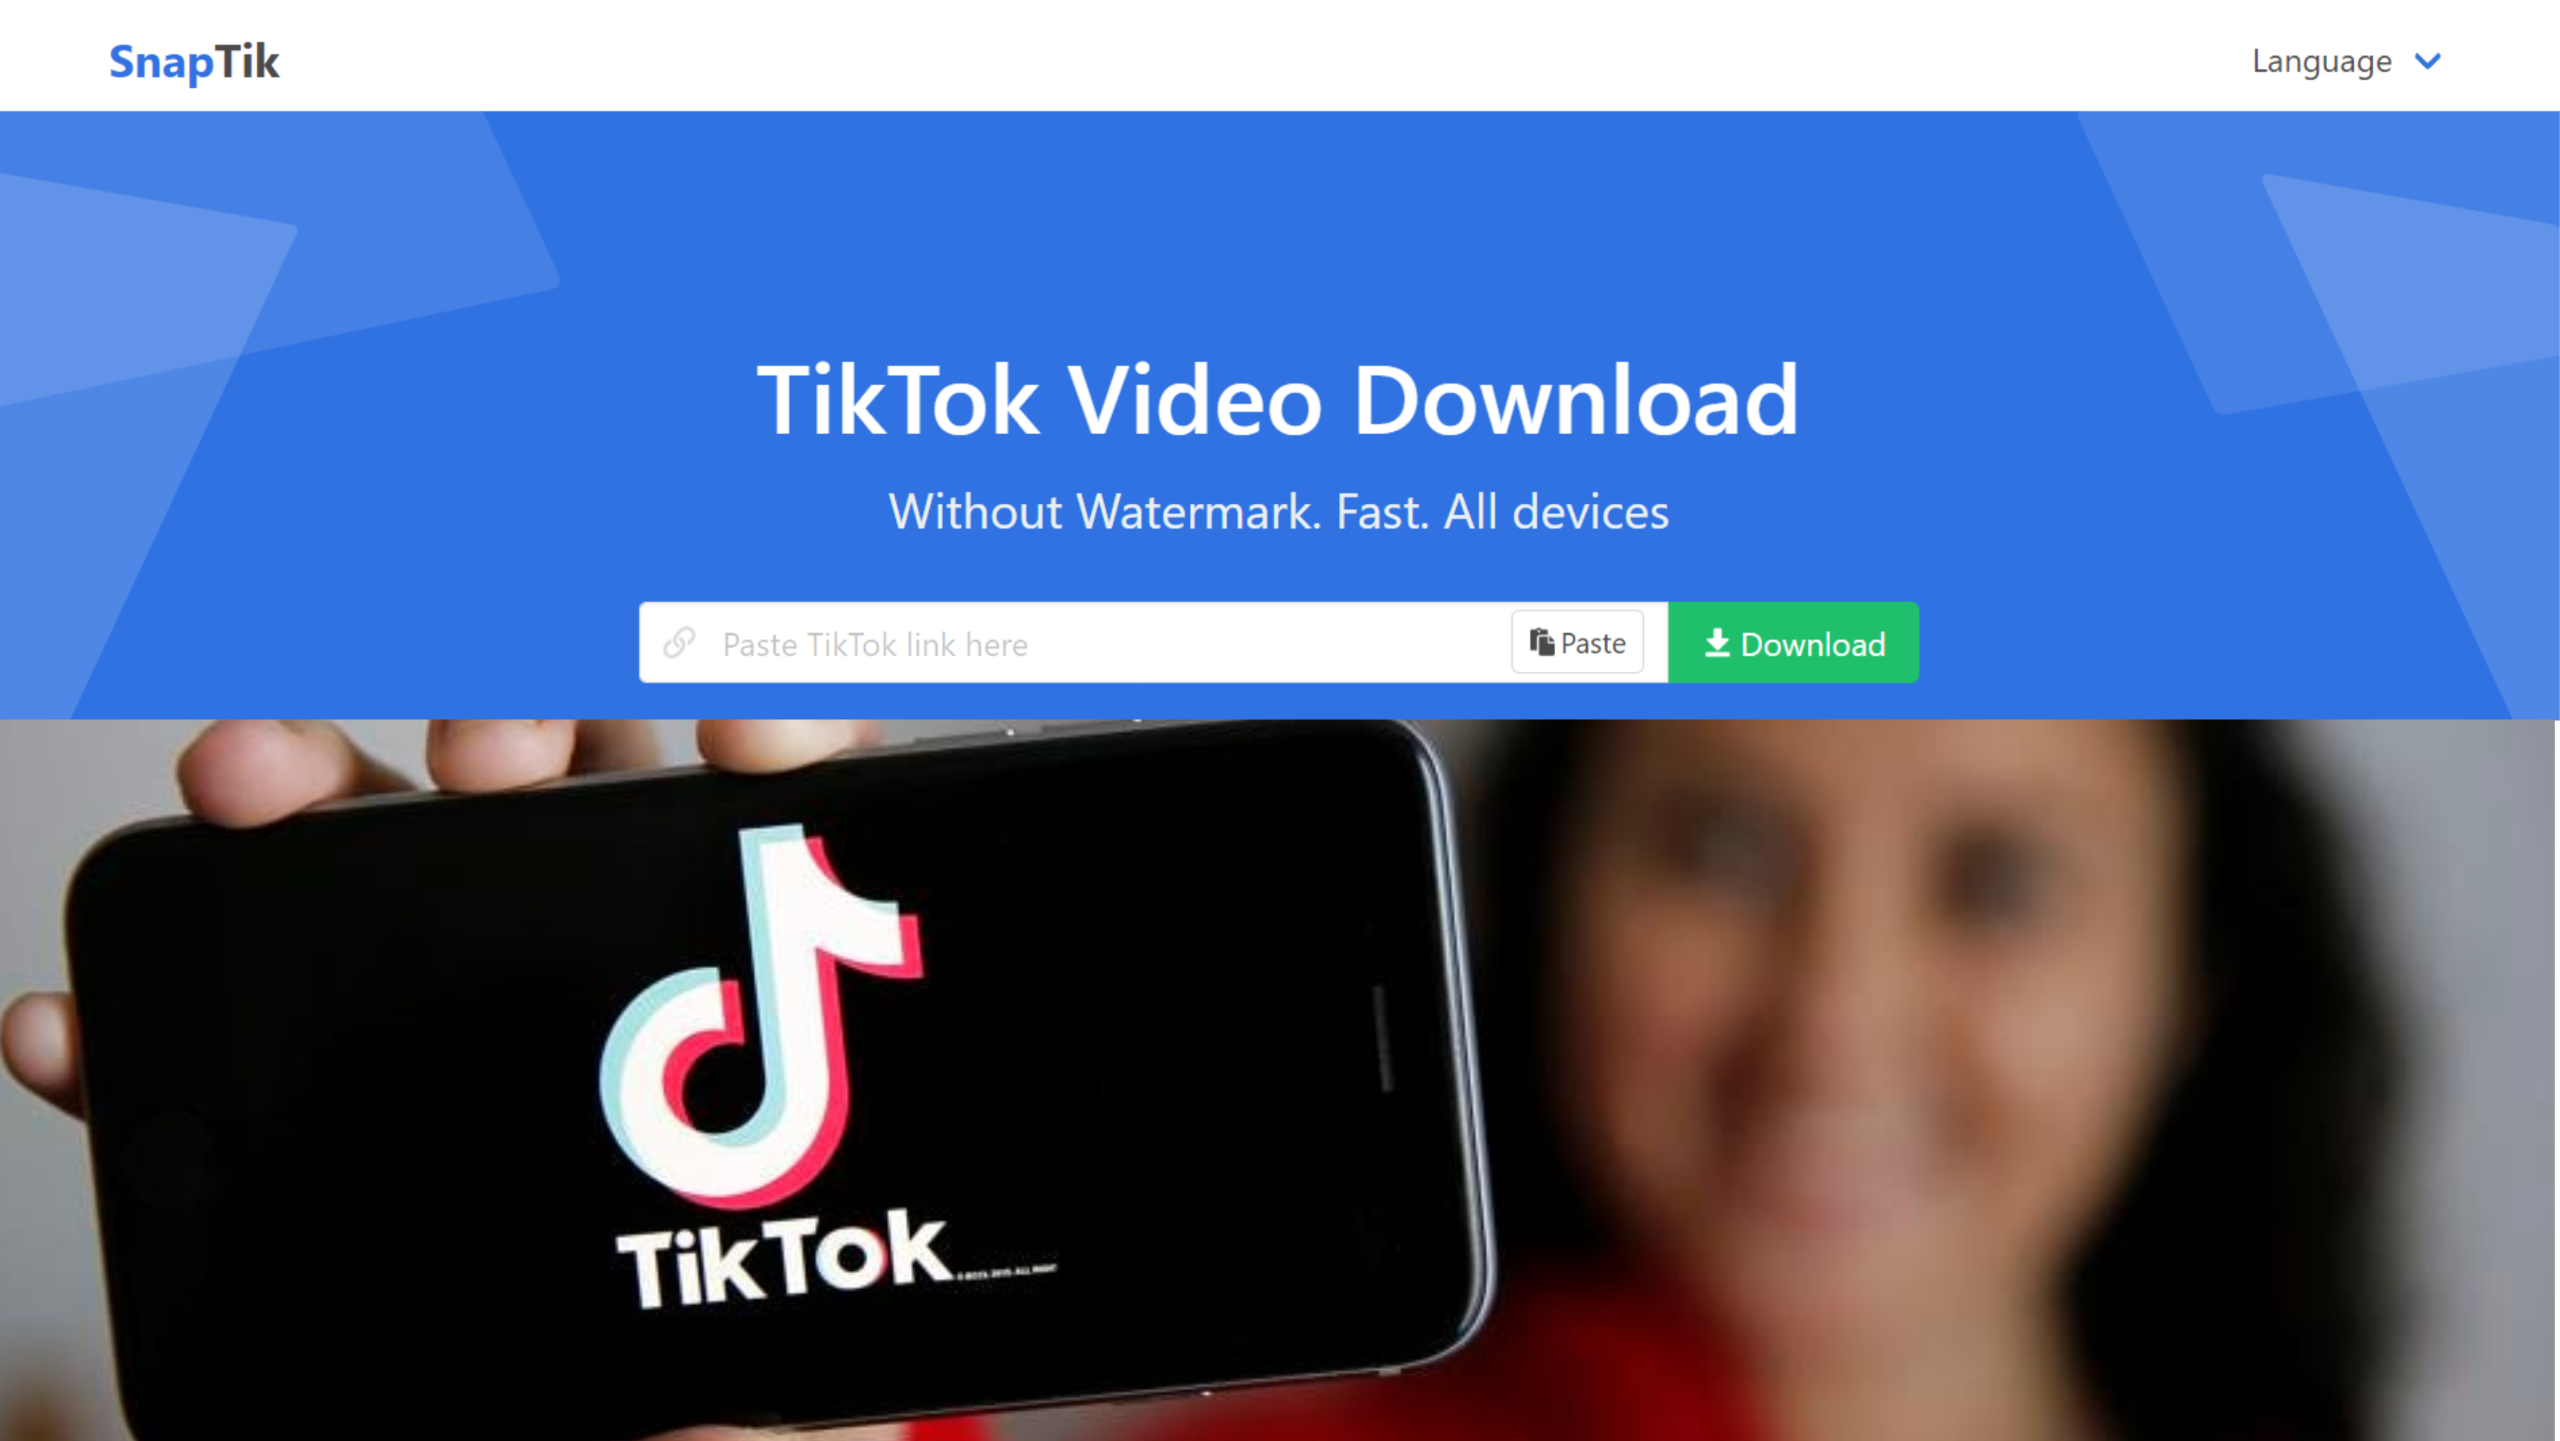 Tải video TikTok bằng SnapTik trên nhiều thiết bị